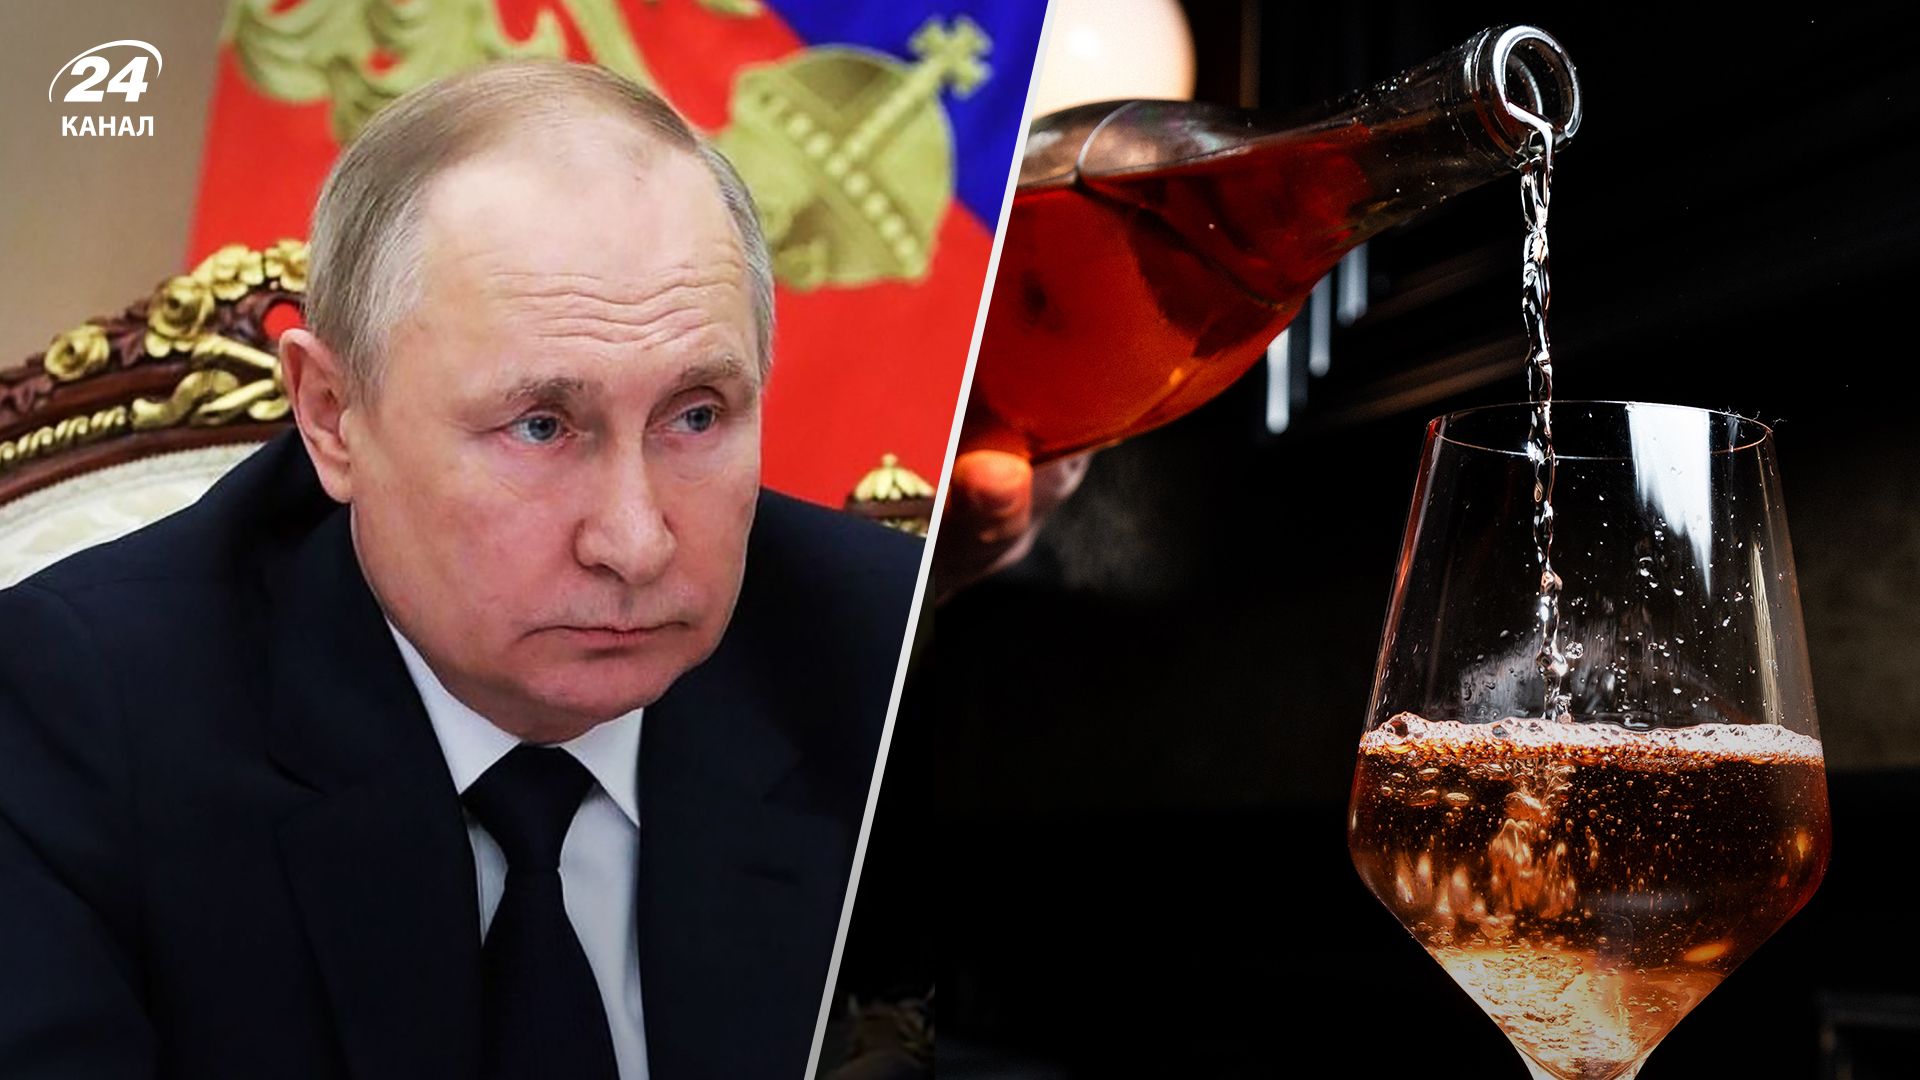 Як Володимир Путін вклав гроші у винокурні й прогорів - деталі